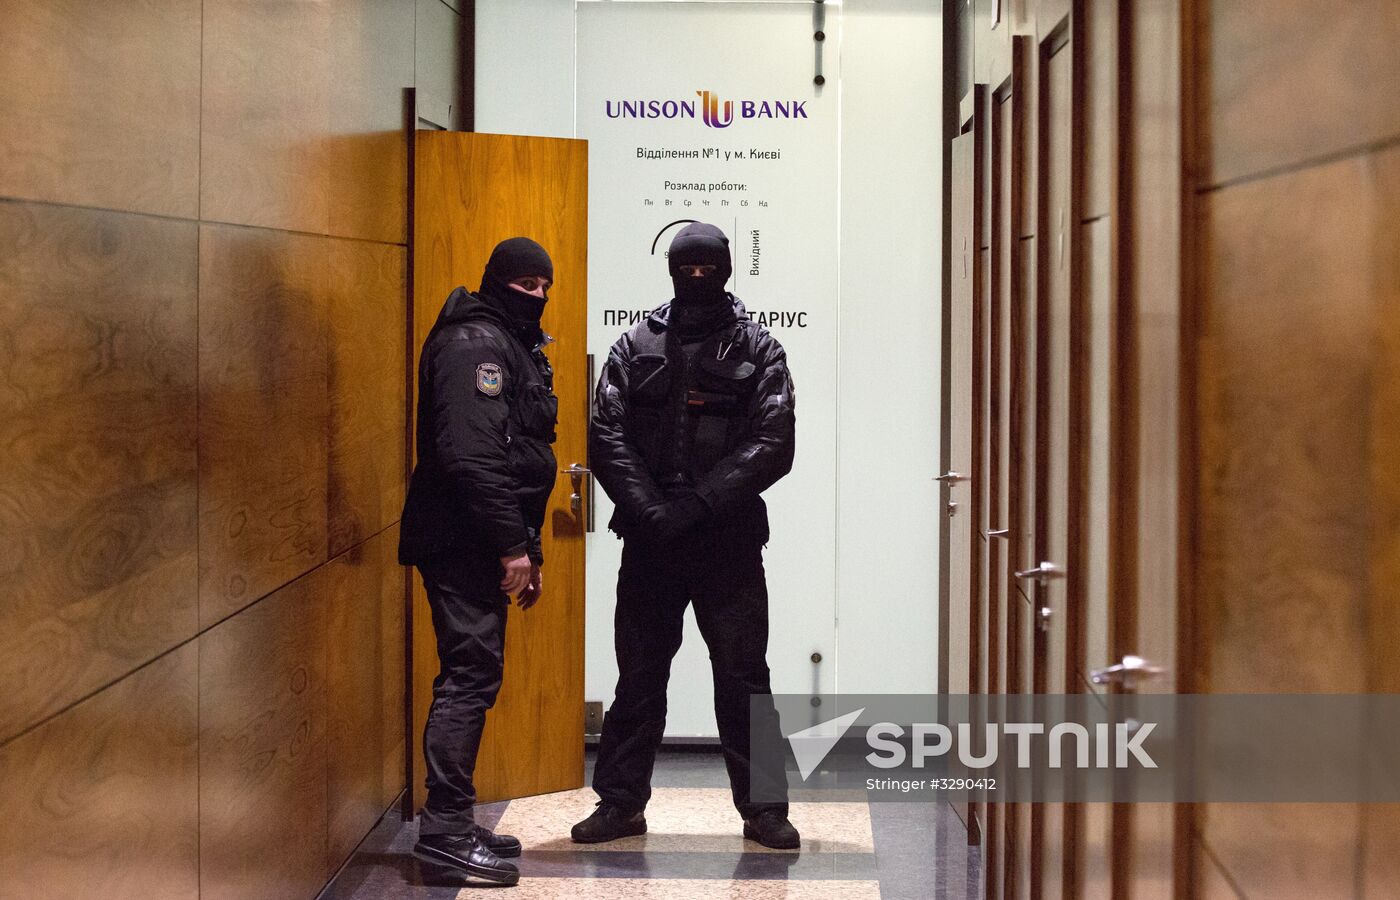 Police search Kiev office of newspaper Vesti